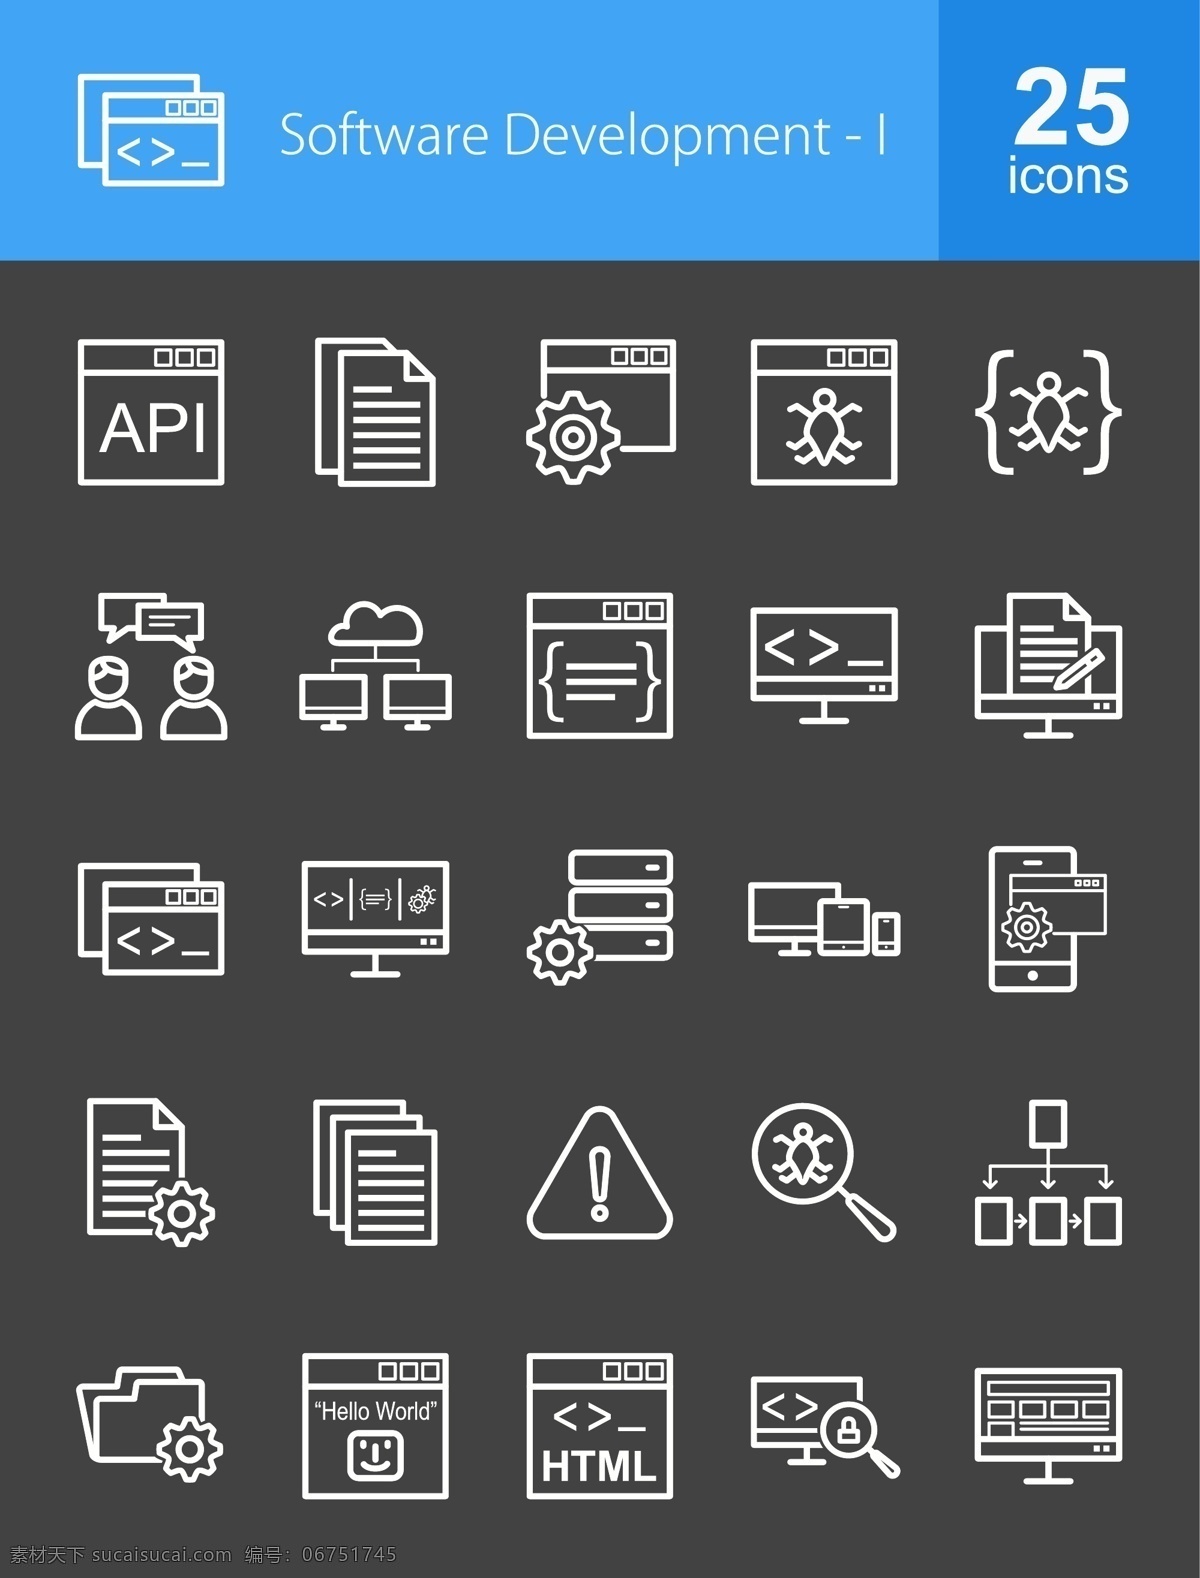 款 软件开发 icon icon图标 文件夹 电脑 警示 放大镜 icon下载